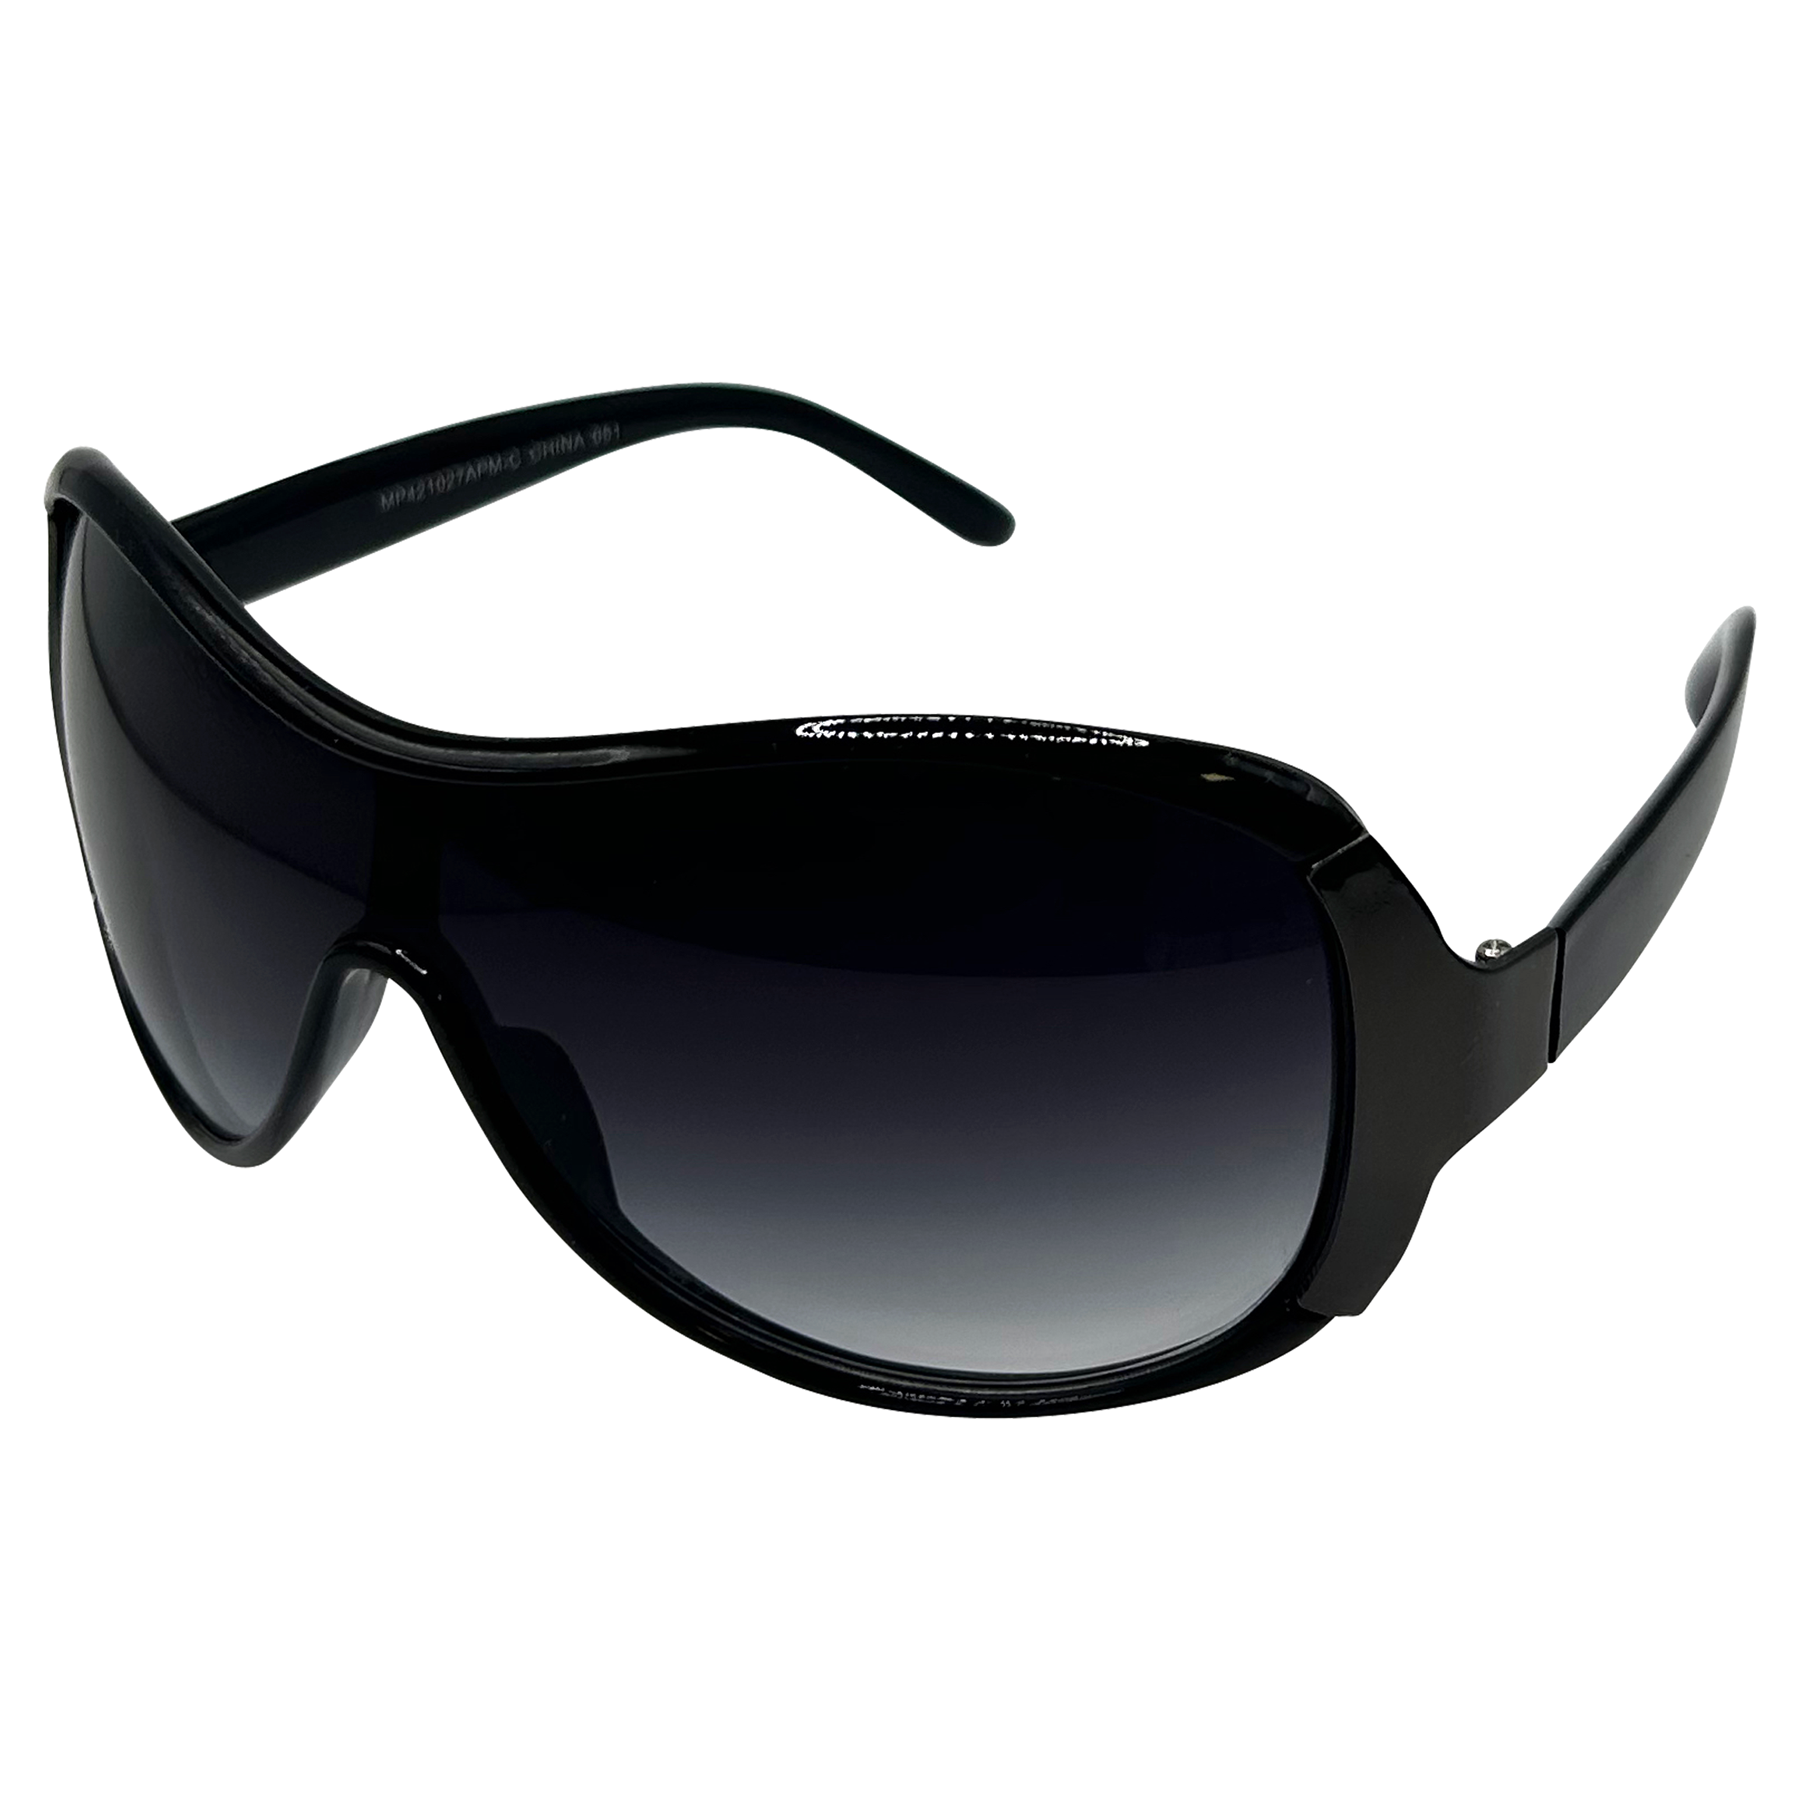 LOVES IT Y2K Shield Sunglasses